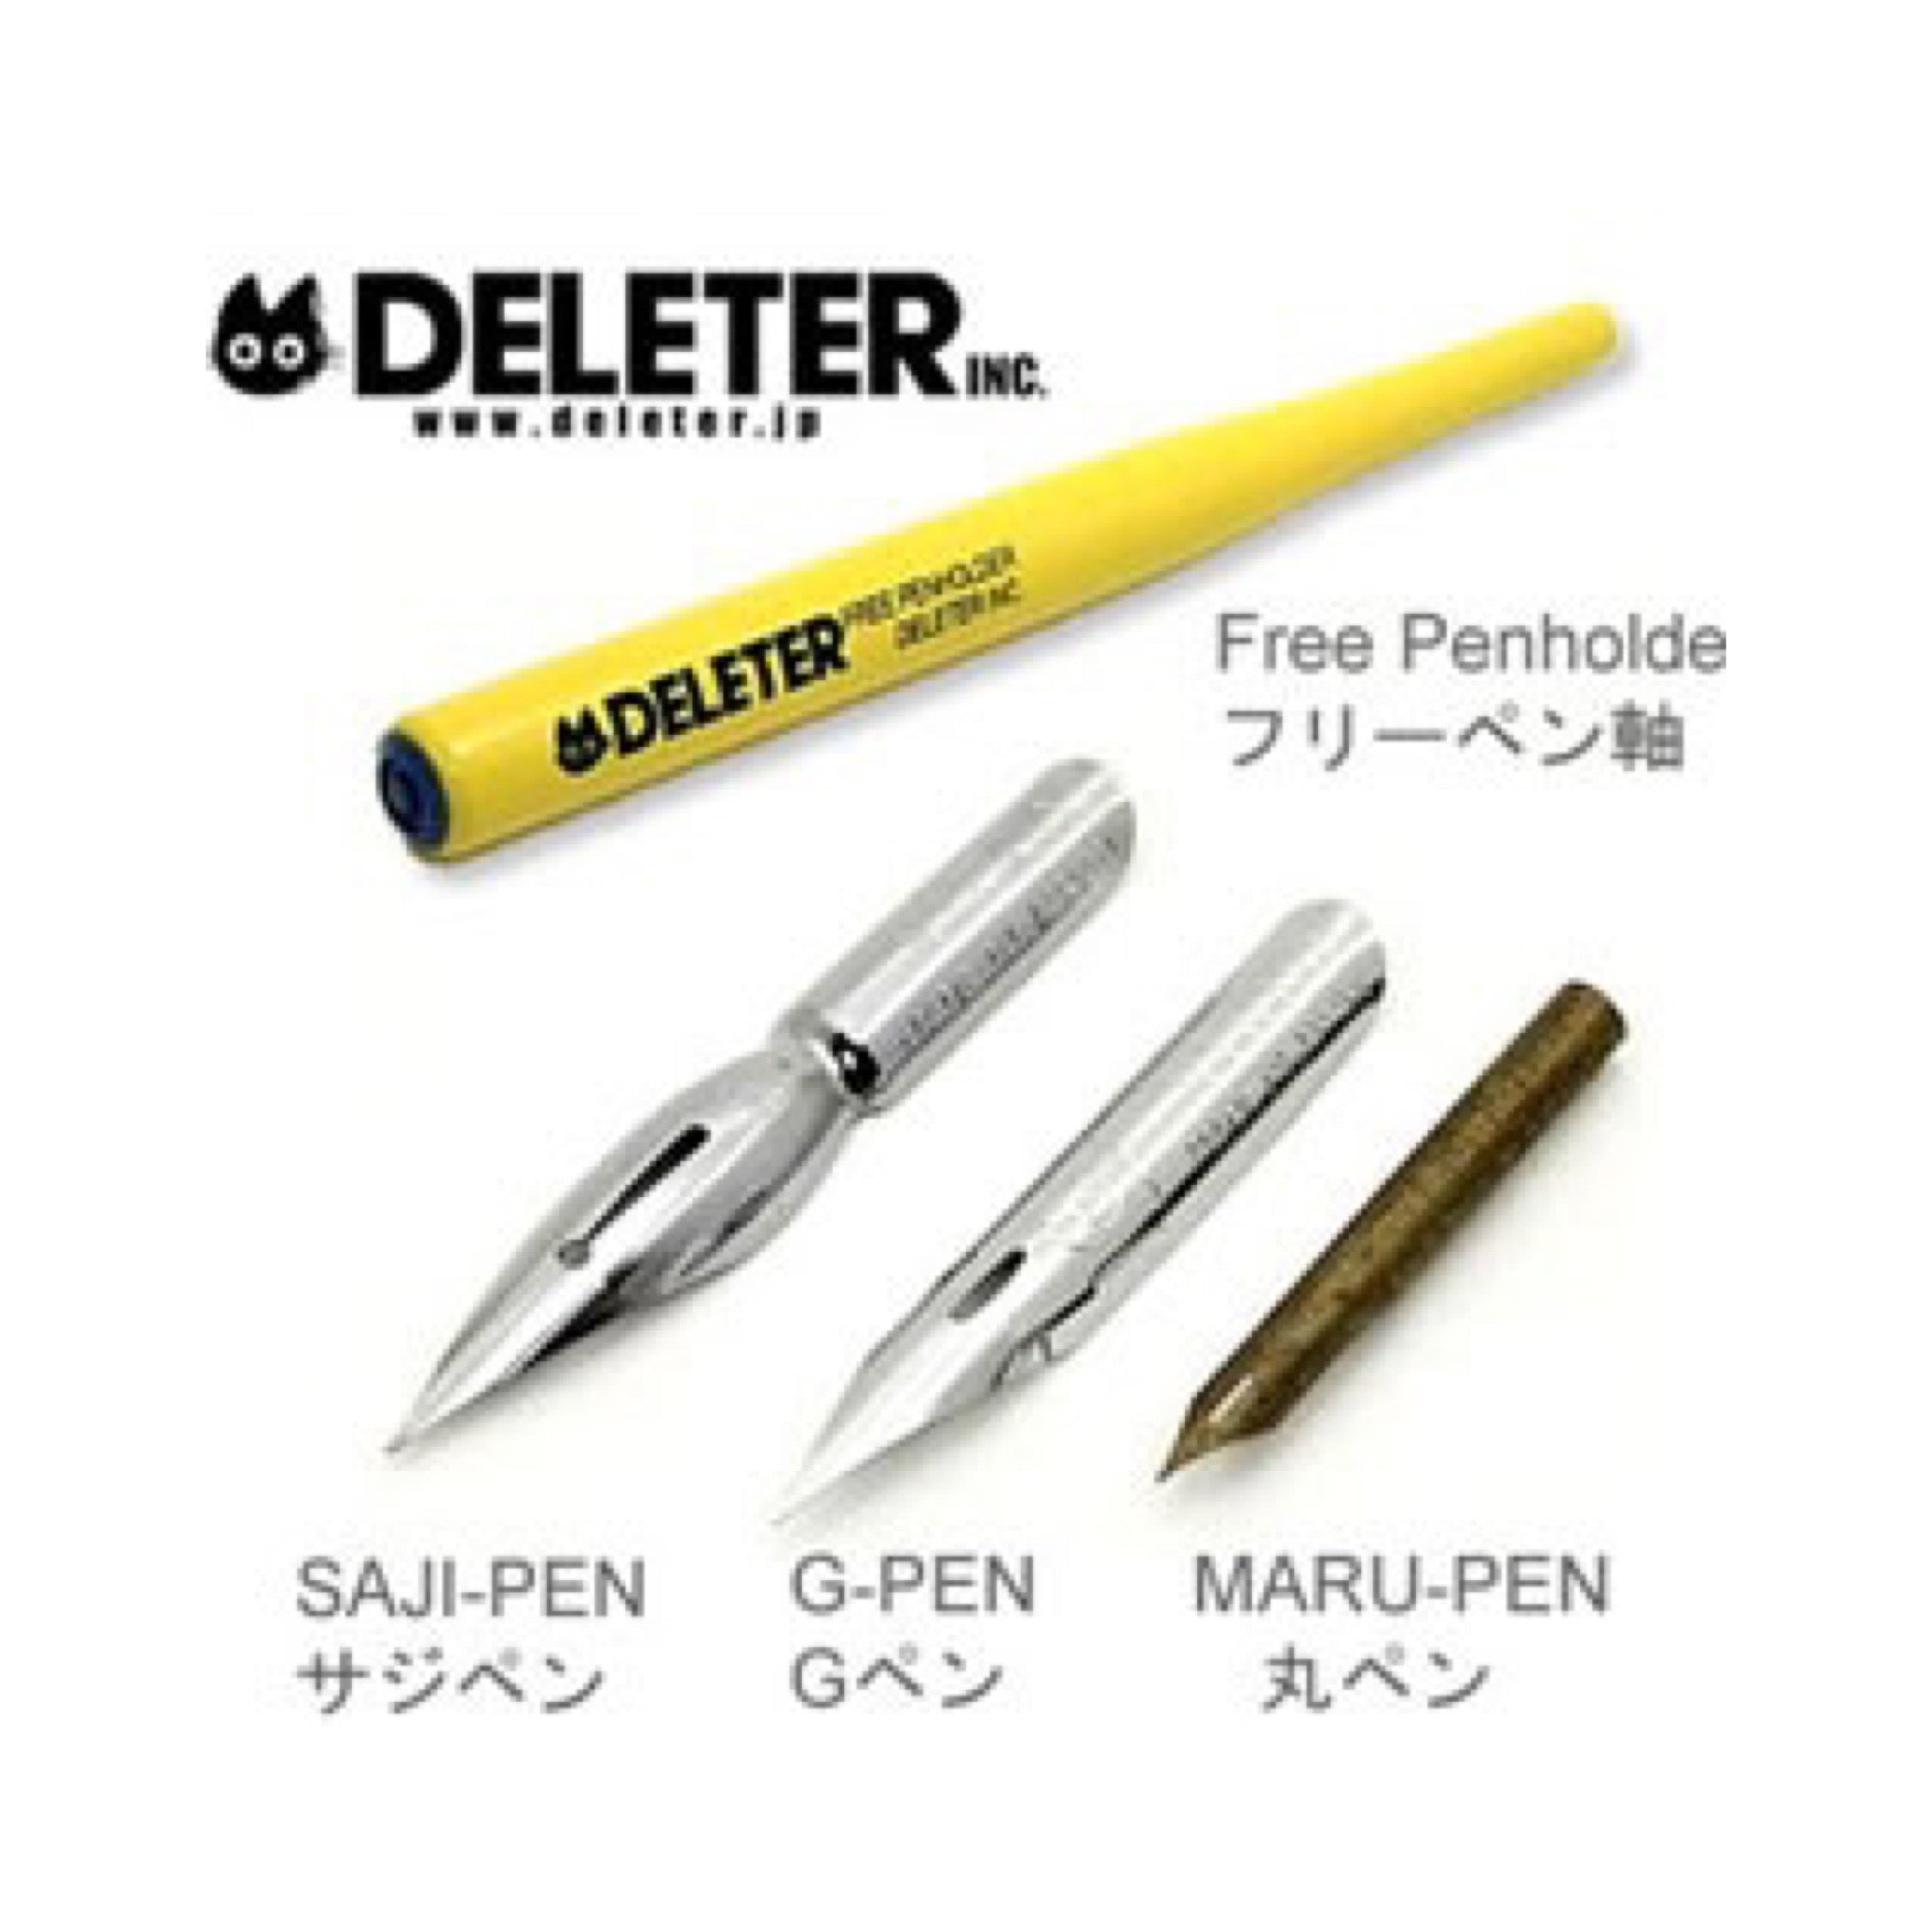 DELETER Manga Dipping Pen Set